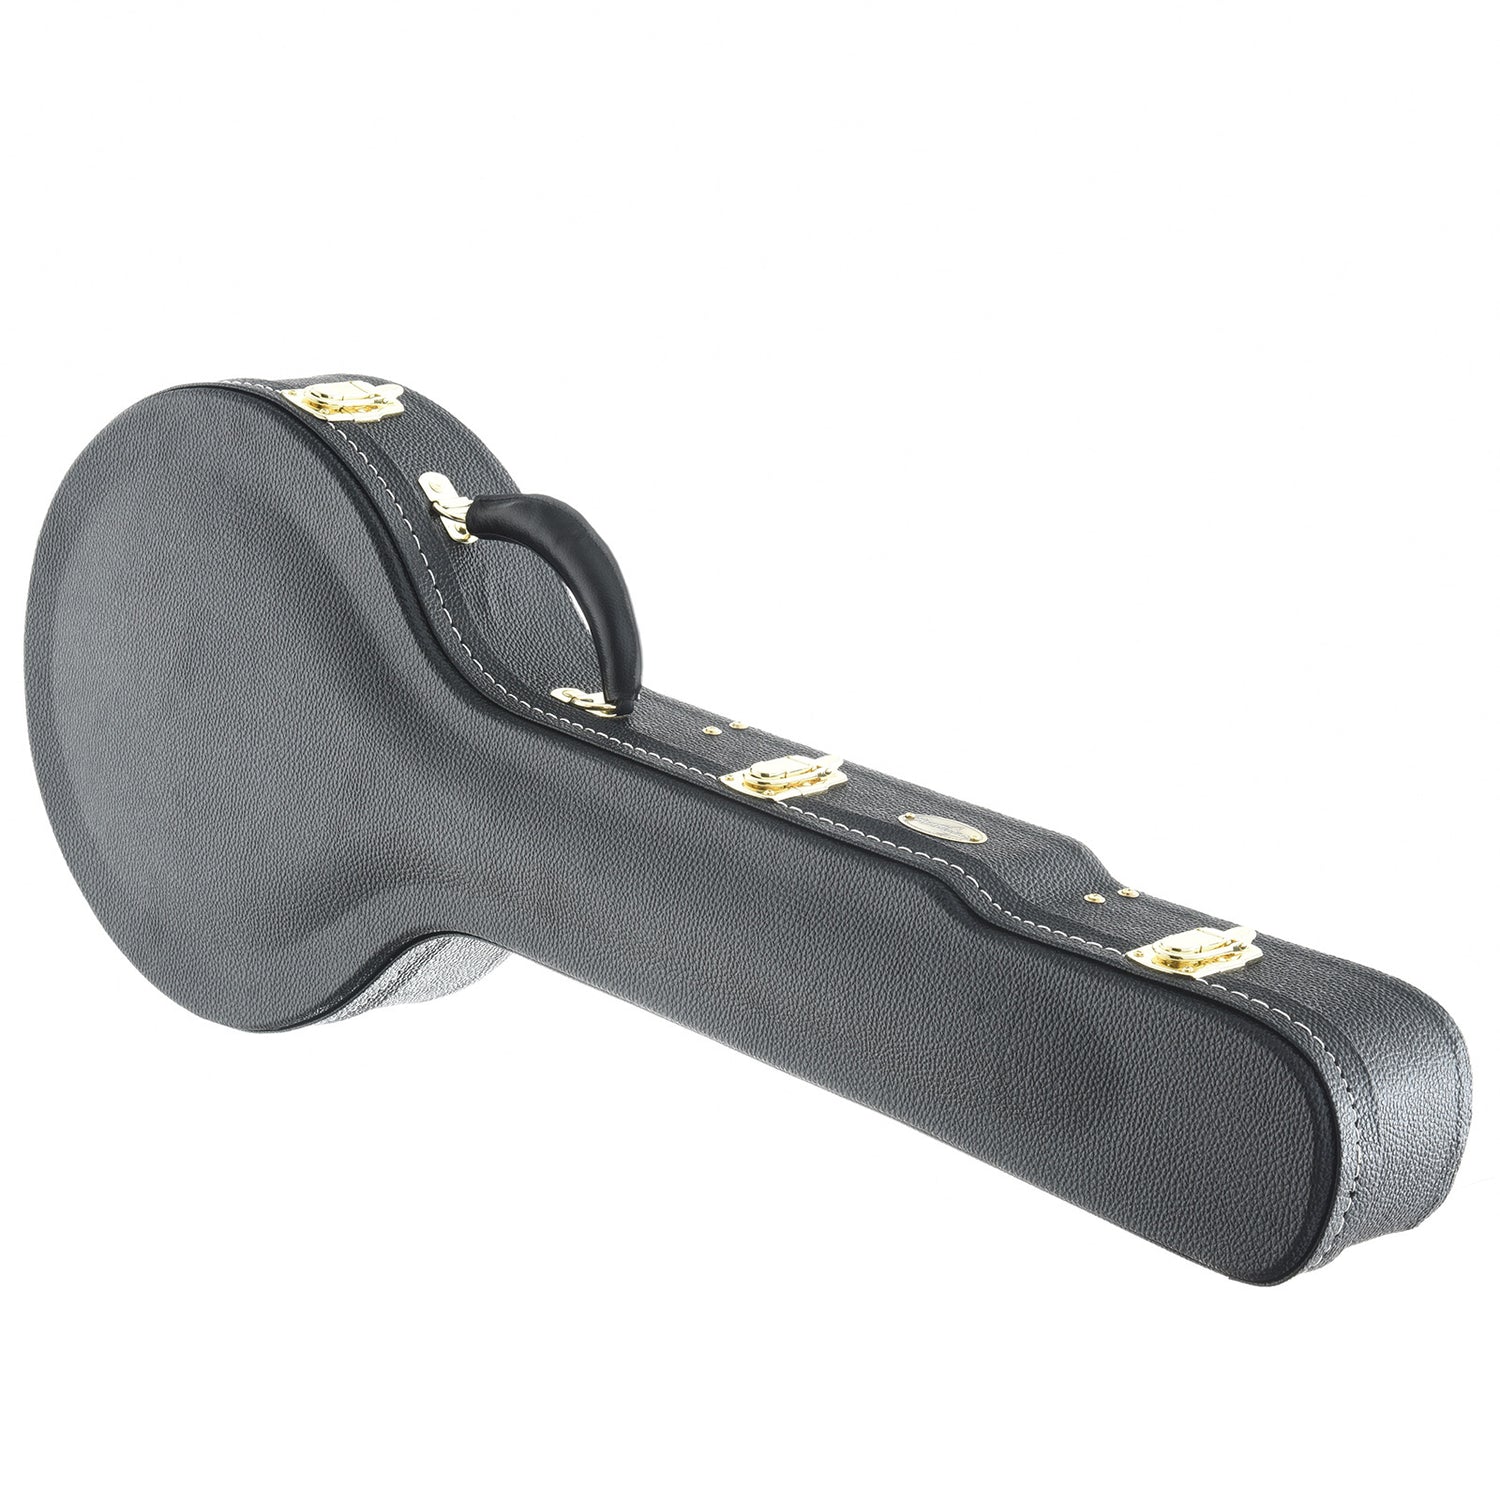 Image 12 of Ome Mira 11" Openback Banjo & Case, Walnut Neck, Radiused Fretboard - SKU# MIRA-WAL11 : Product Type Open Back Banjos : Elderly Instruments